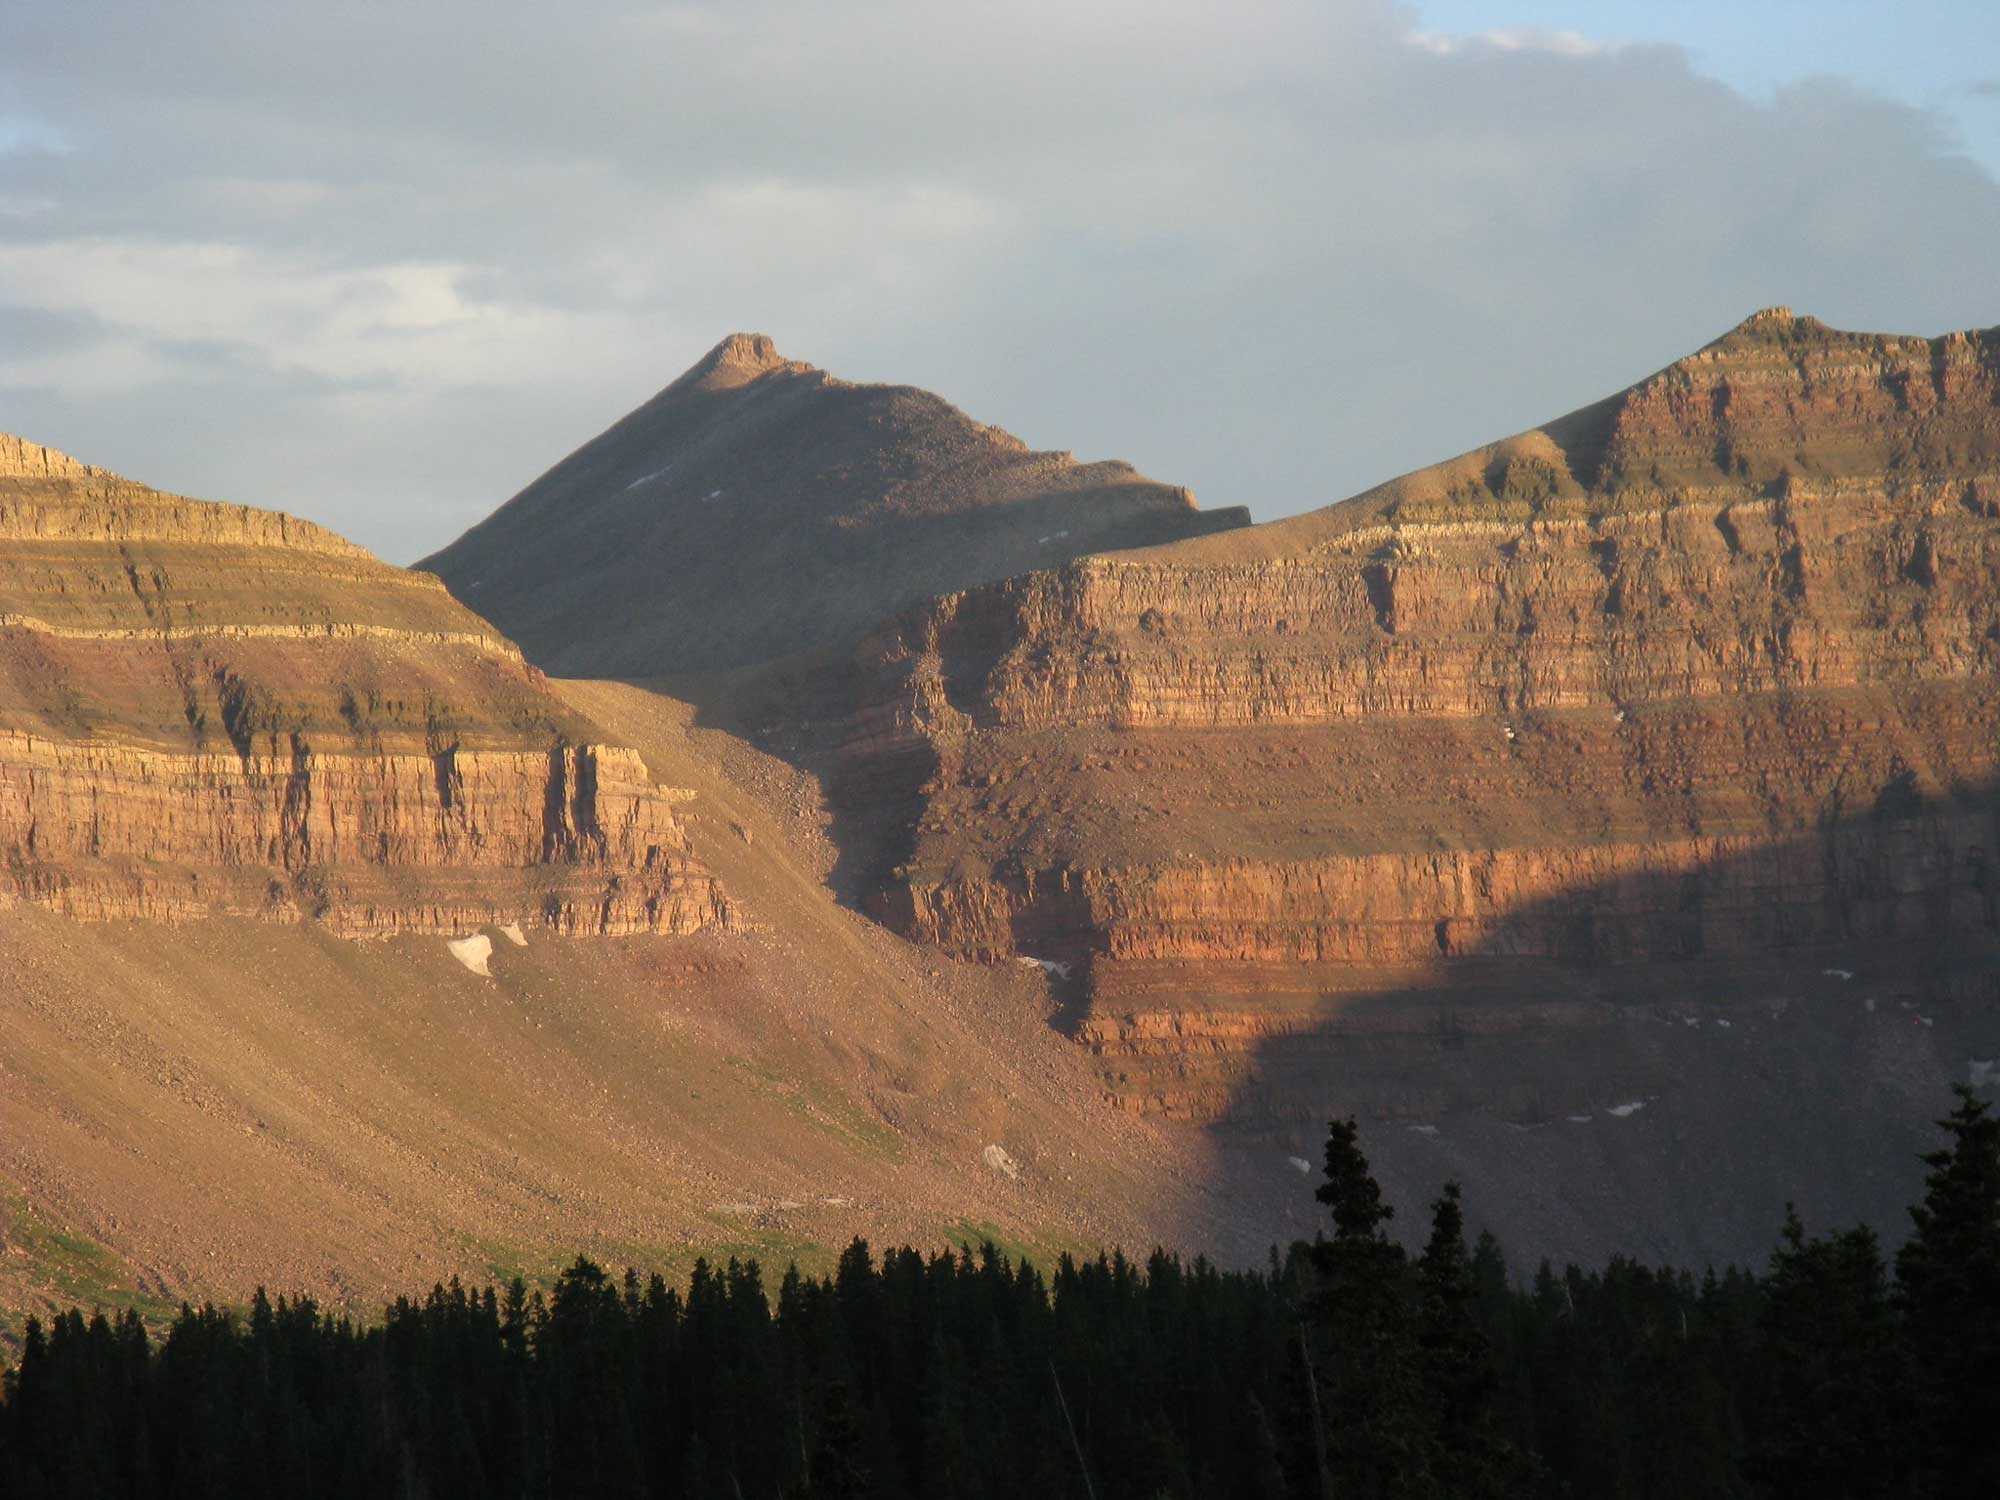 Photograph of Kings Peak, Utah.